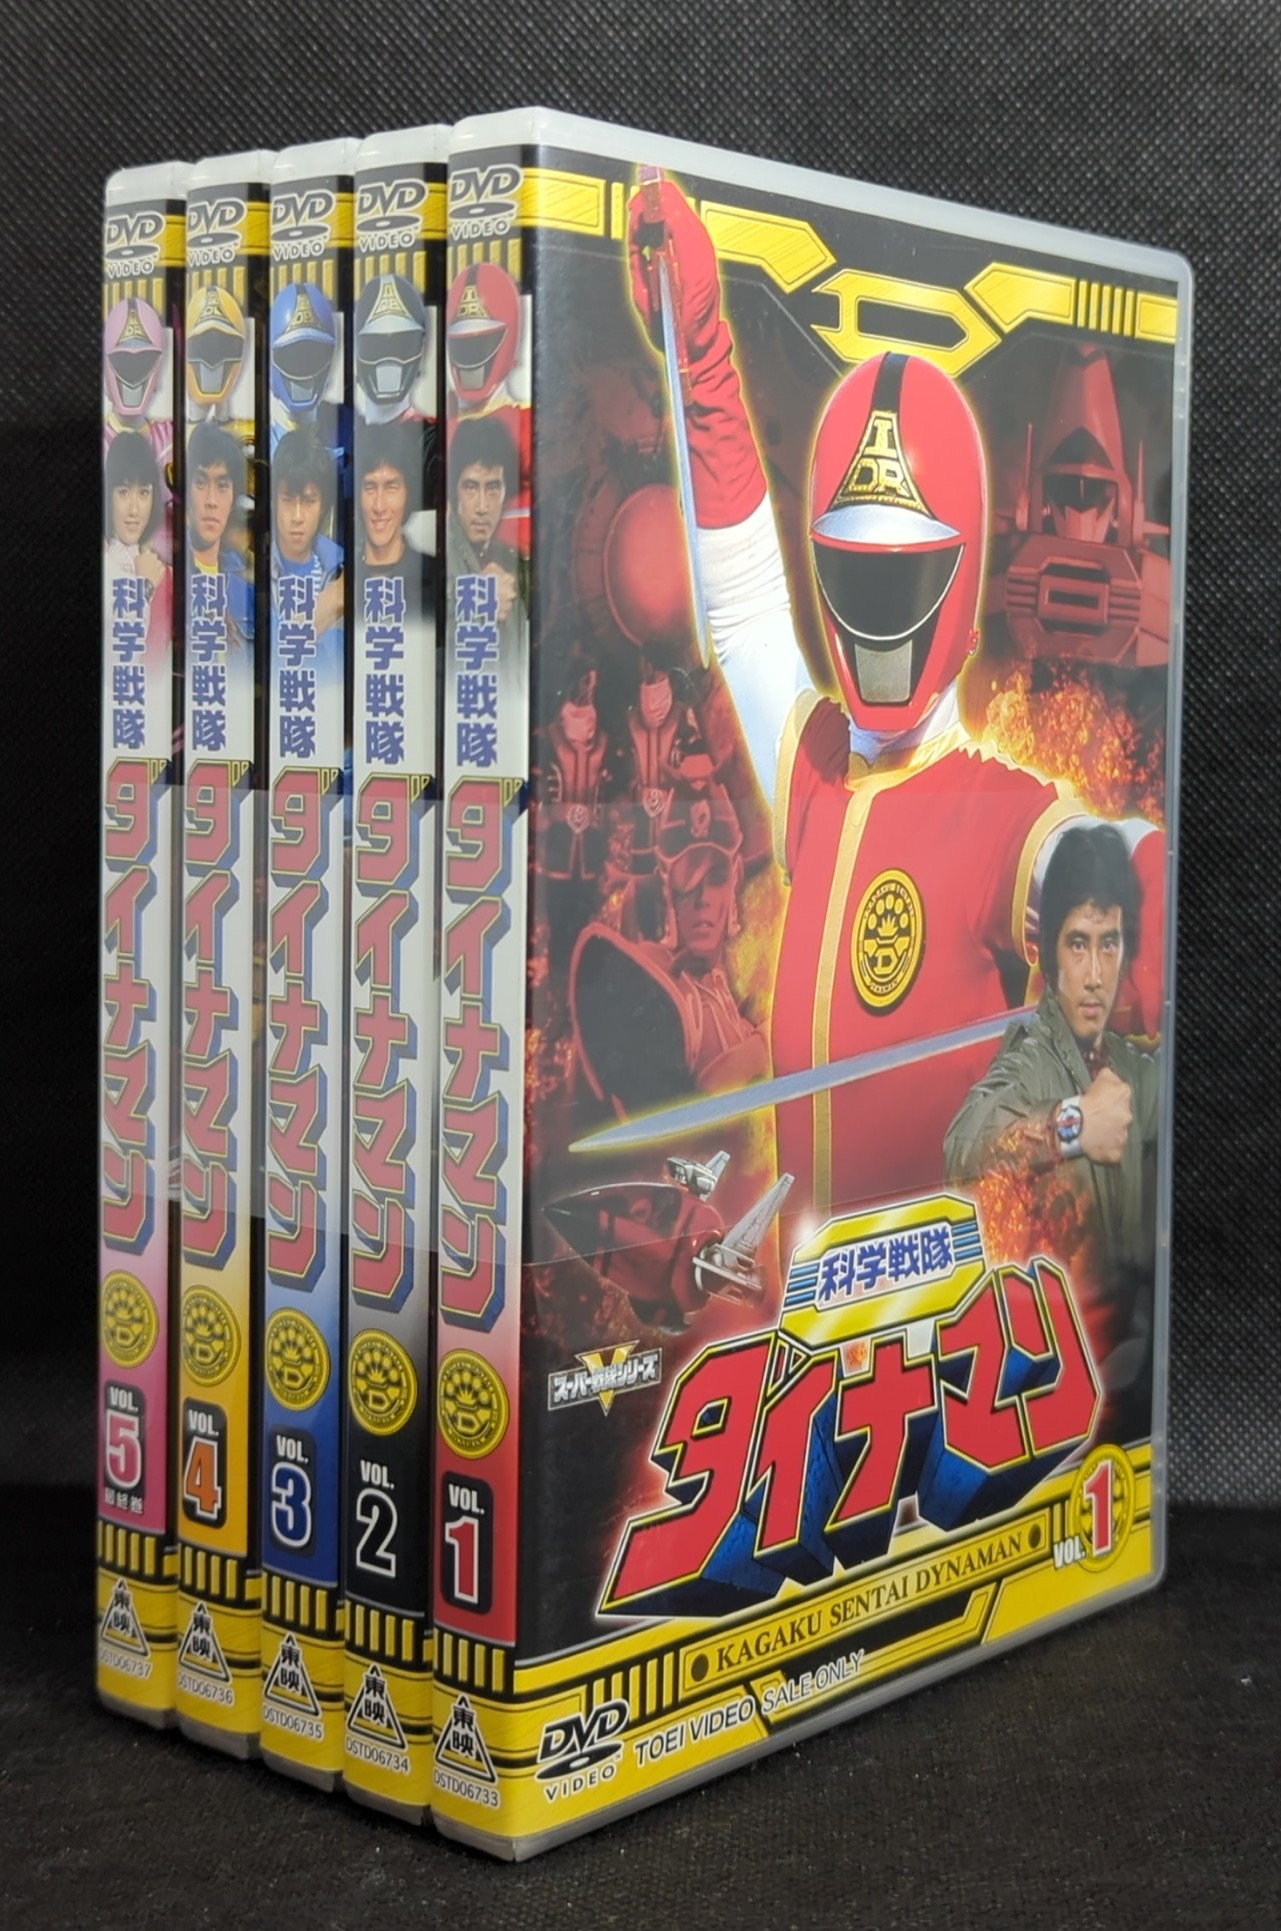 全ての DVD 科学戦隊ダイナマン 全5巻セット 販売用 セル版 日本映画